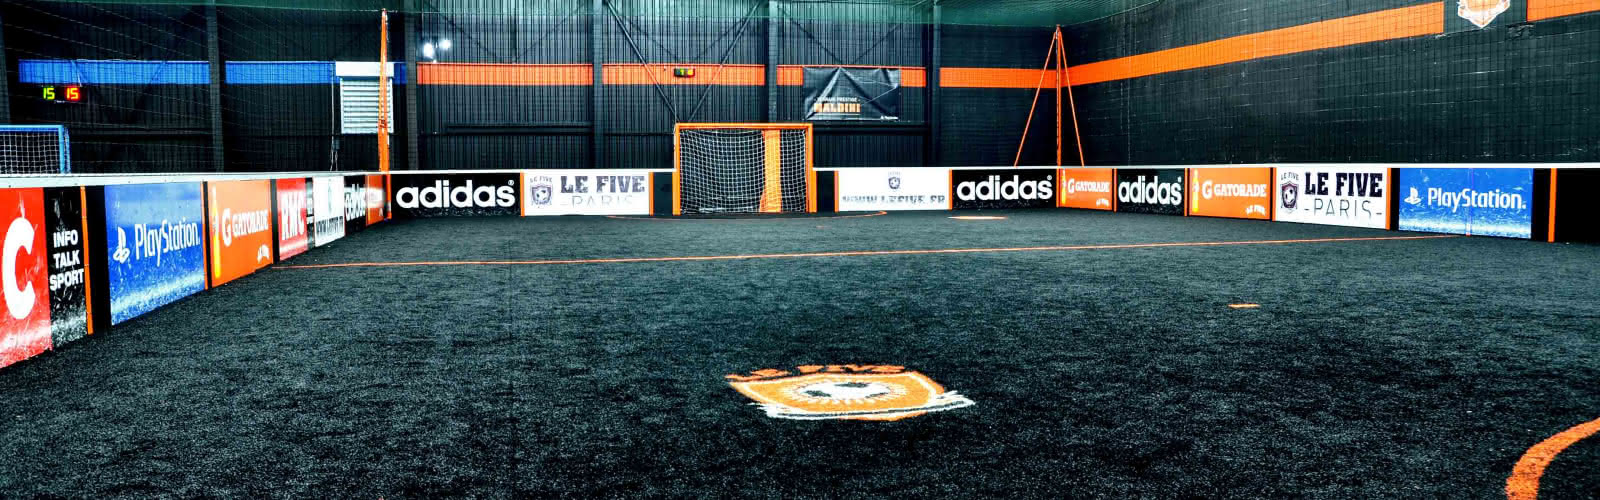 Le Five, terrain de football en gazon synthétique, ouvert à tous, différents lieux en Ile-de-France 2016